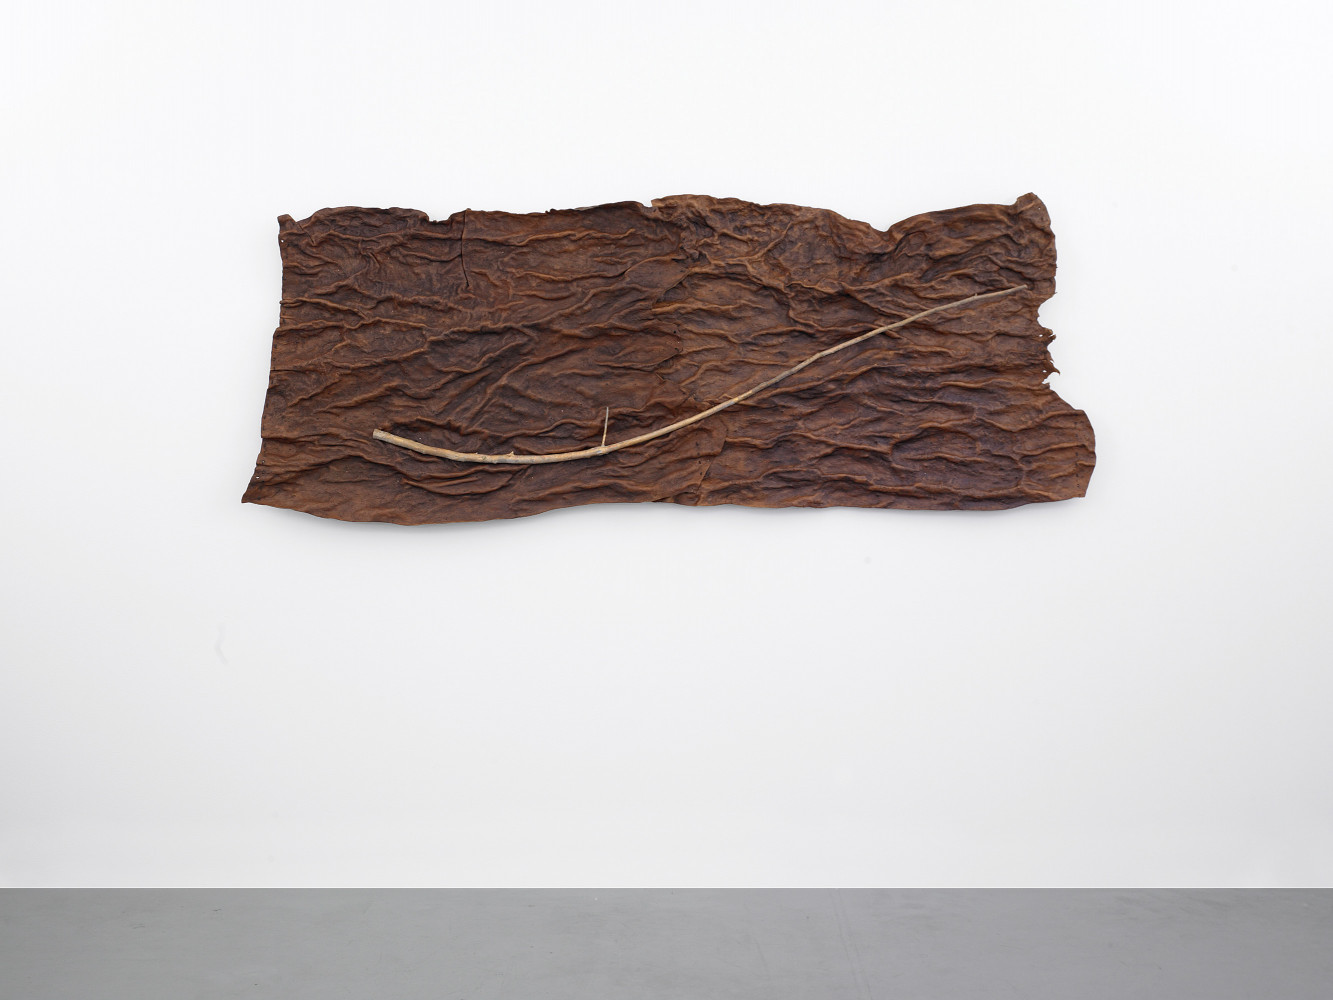 ‘Guiseppe Penone, Pelle di cedro’, 2004, Leather, bronze